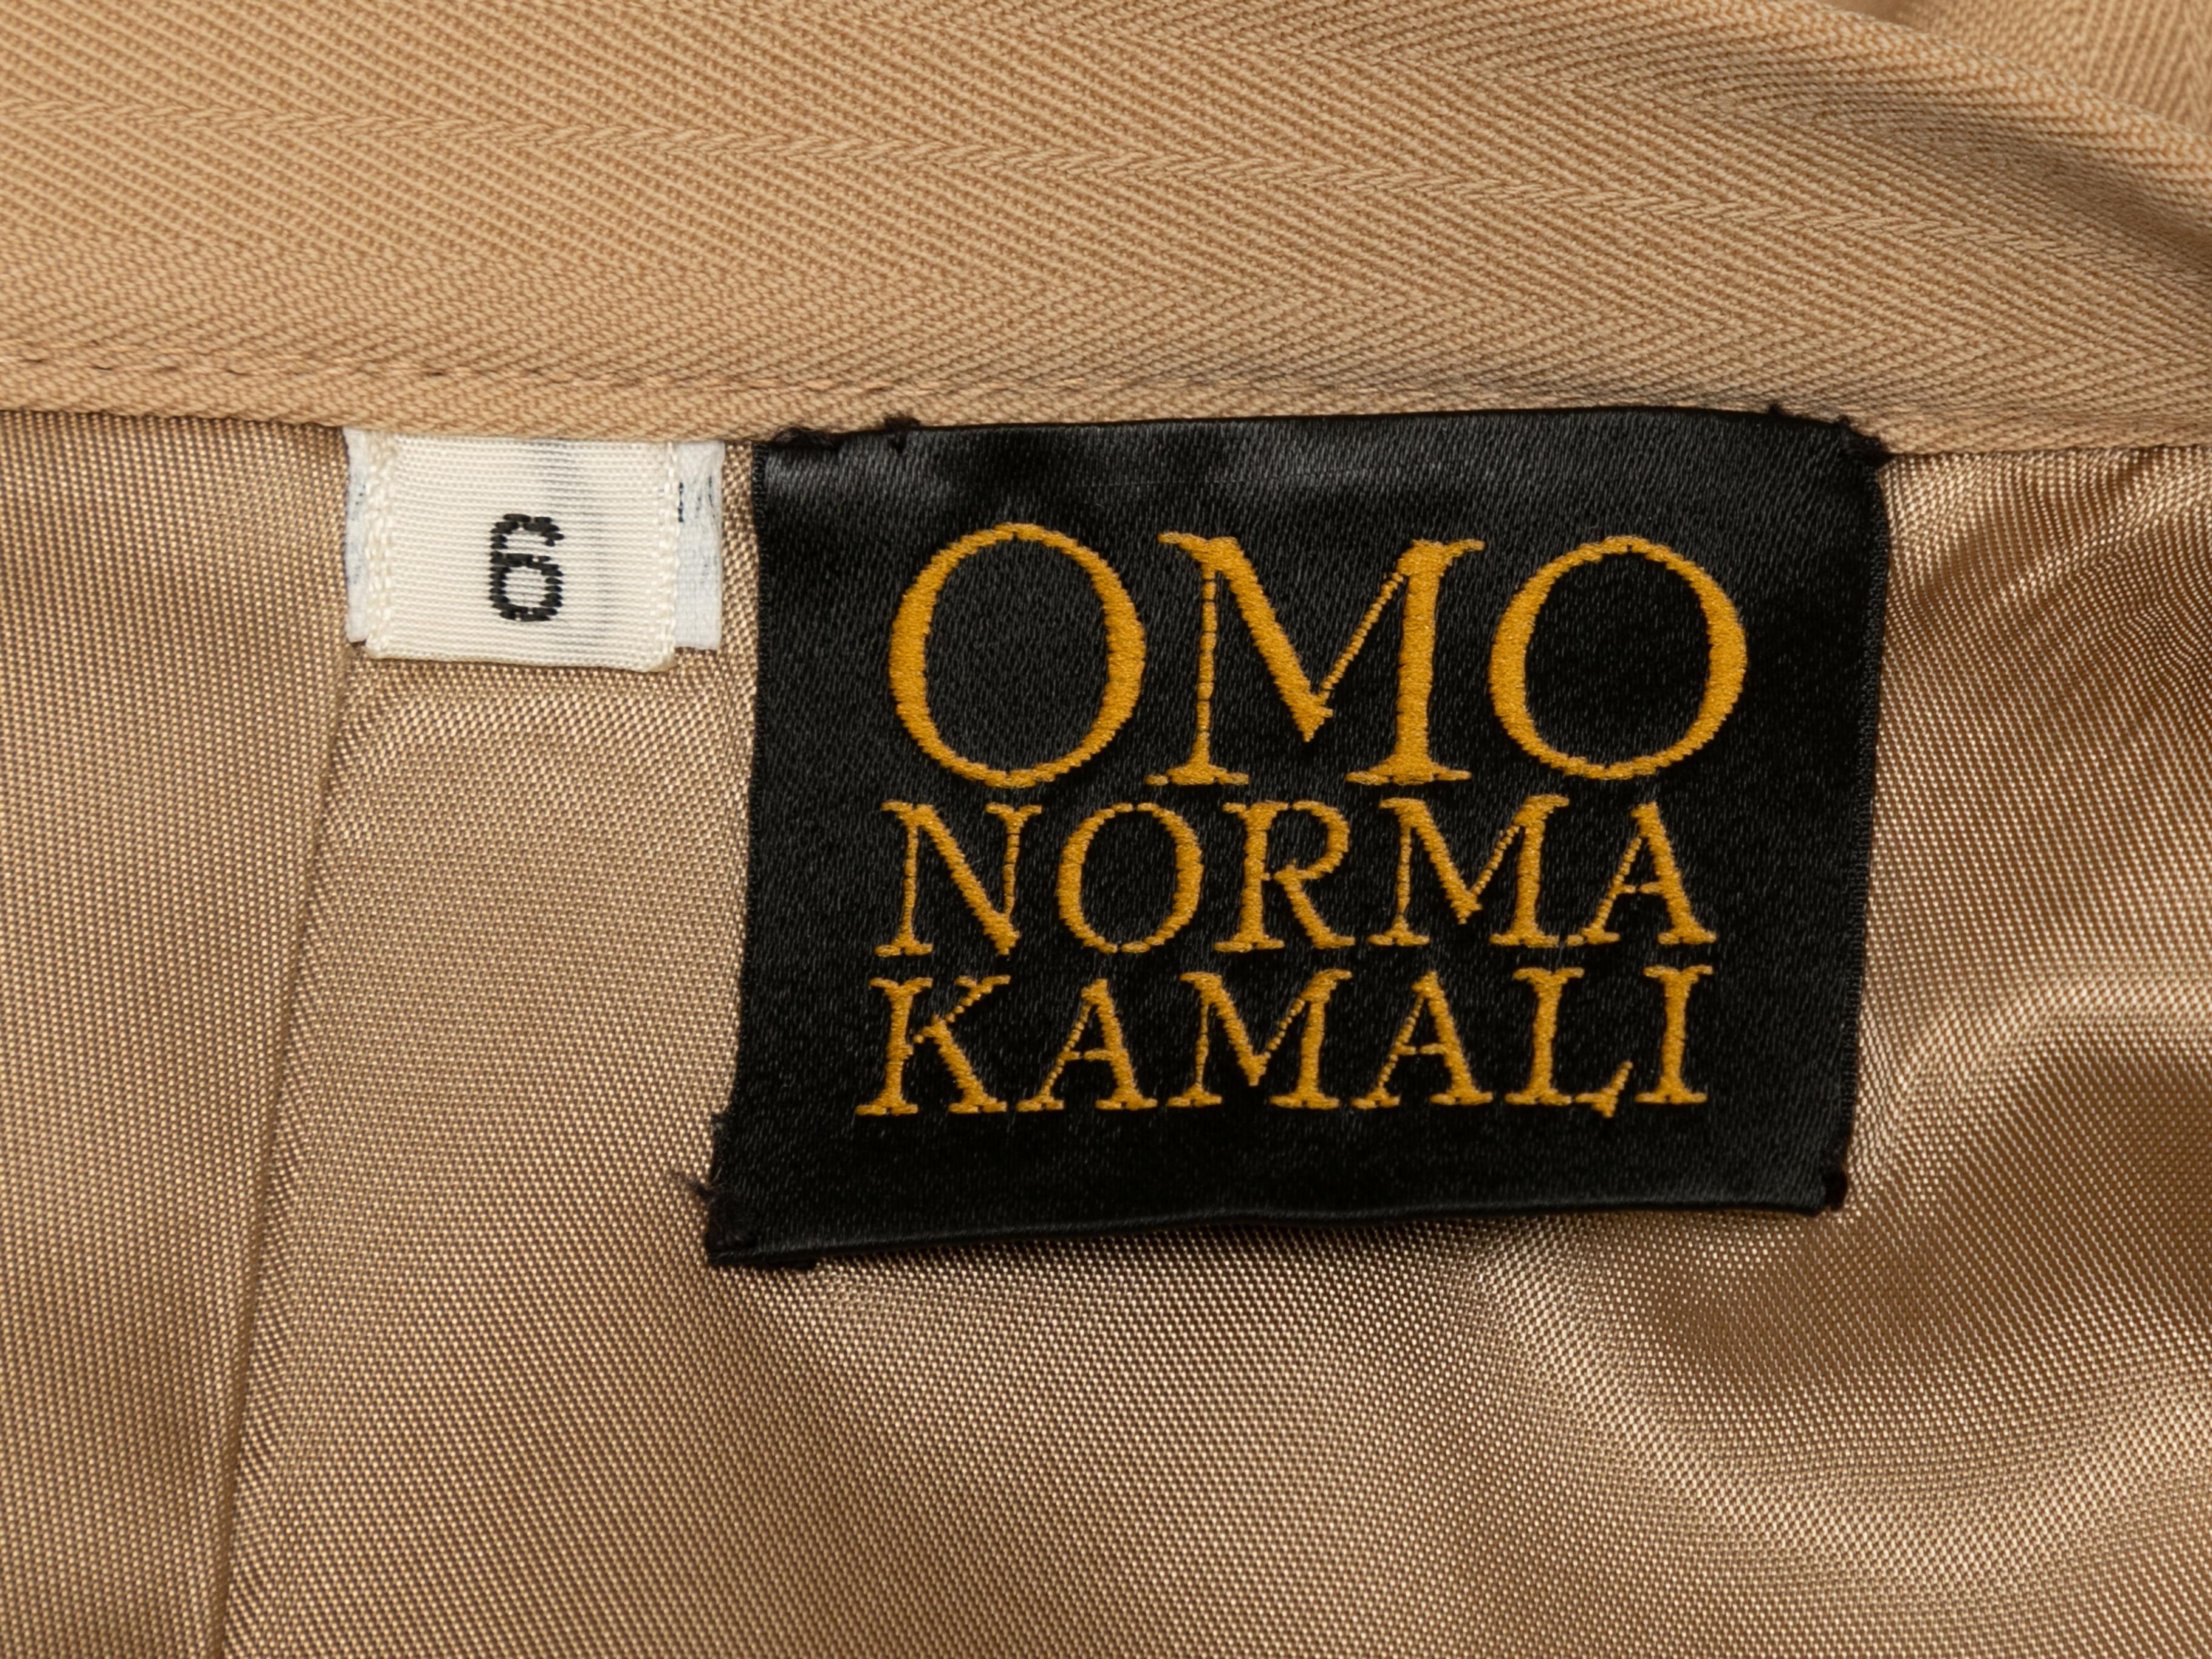 Vintage tan pencil skirt by Omo Norma Kamali. Circa 1980s. Zip closure at back. 26